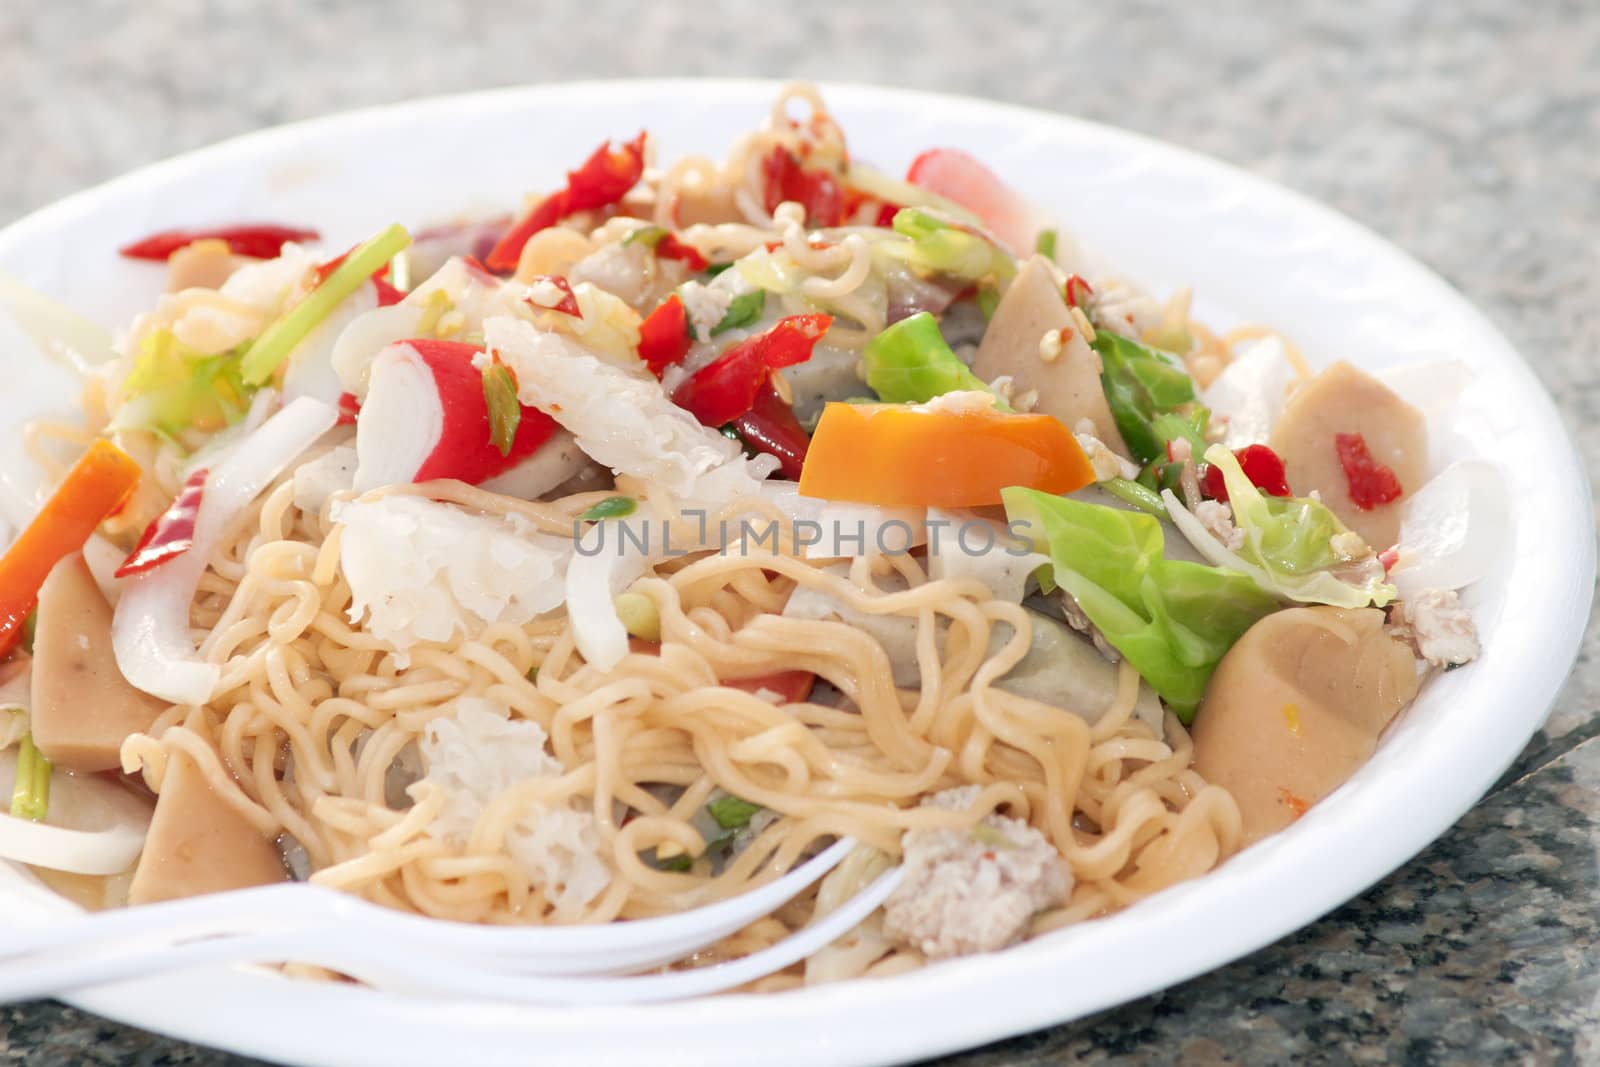 Thai spicy noodle salad.